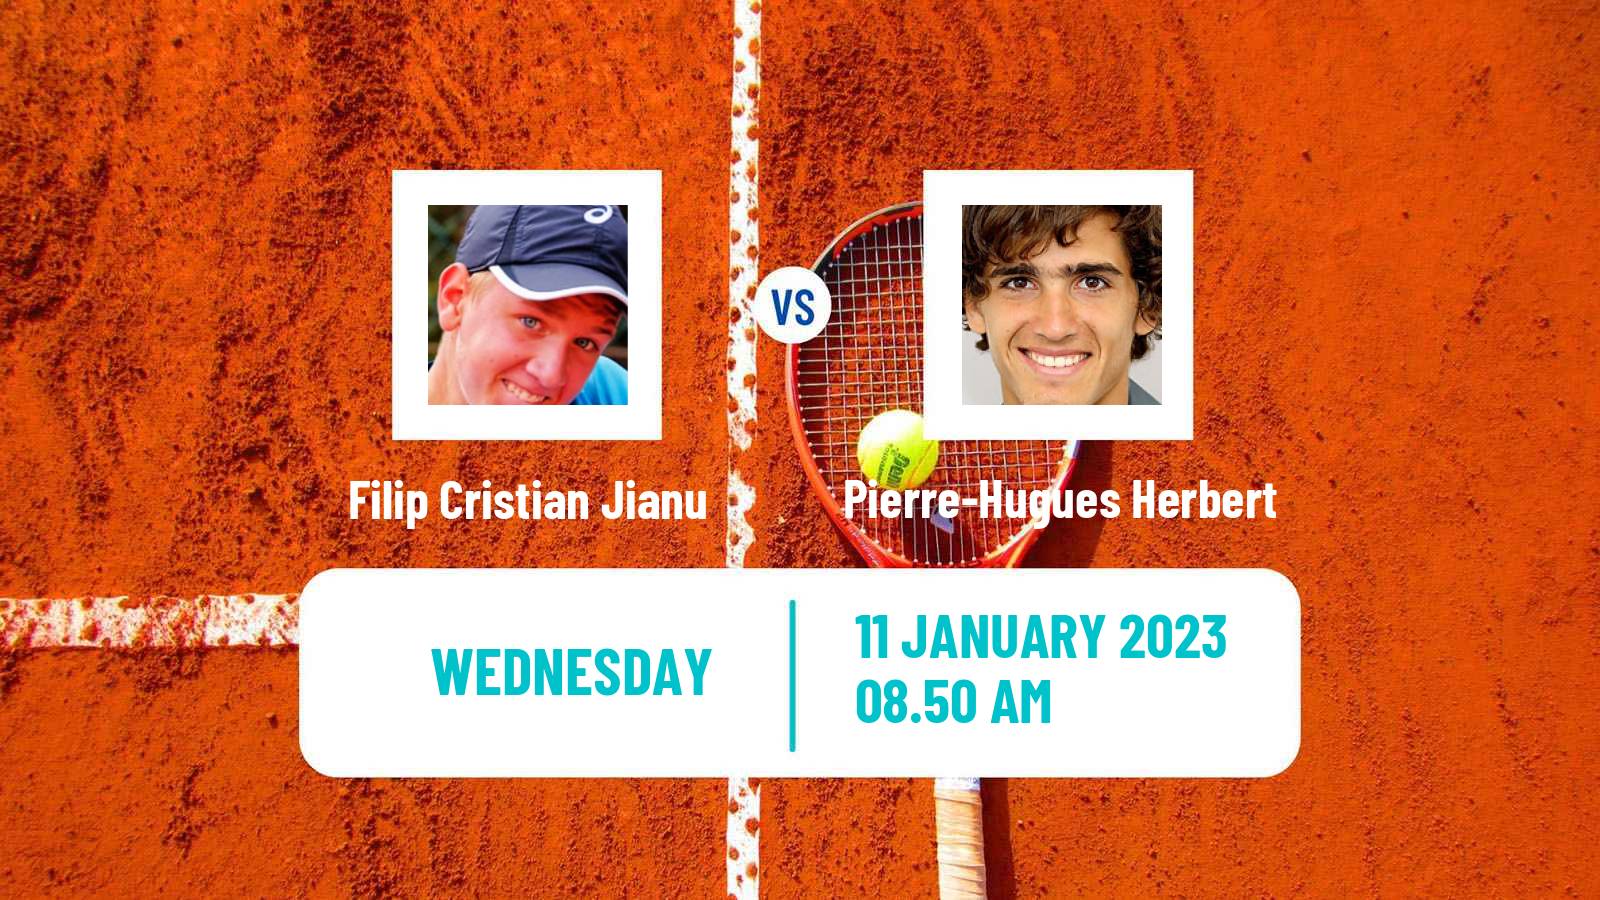 Tennis ATP Challenger Filip Cristian Jianu - Pierre-Hugues Herbert